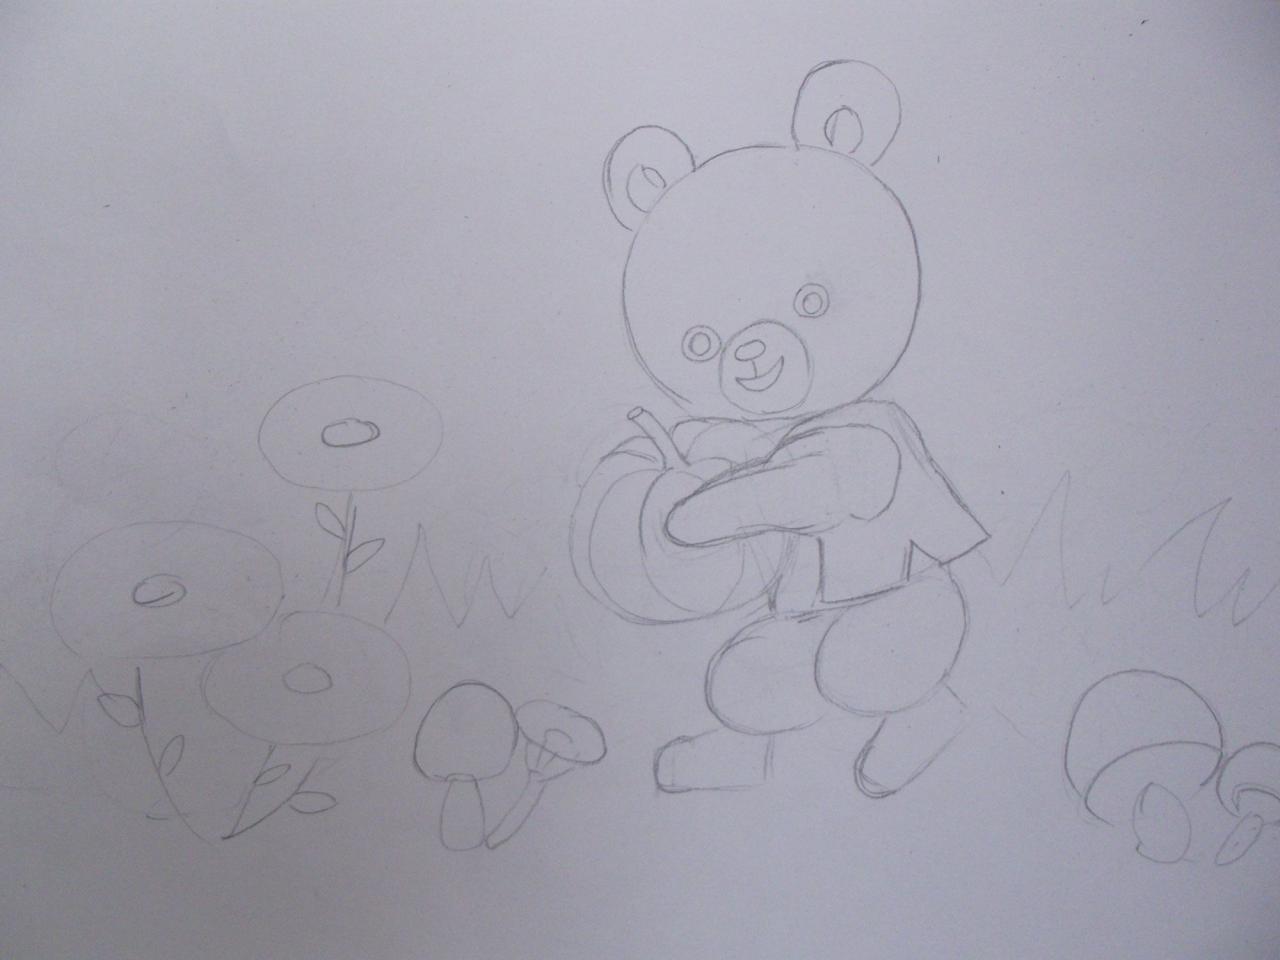 第二步，大体画出小黑熊头部、五官、躯干及四肢。